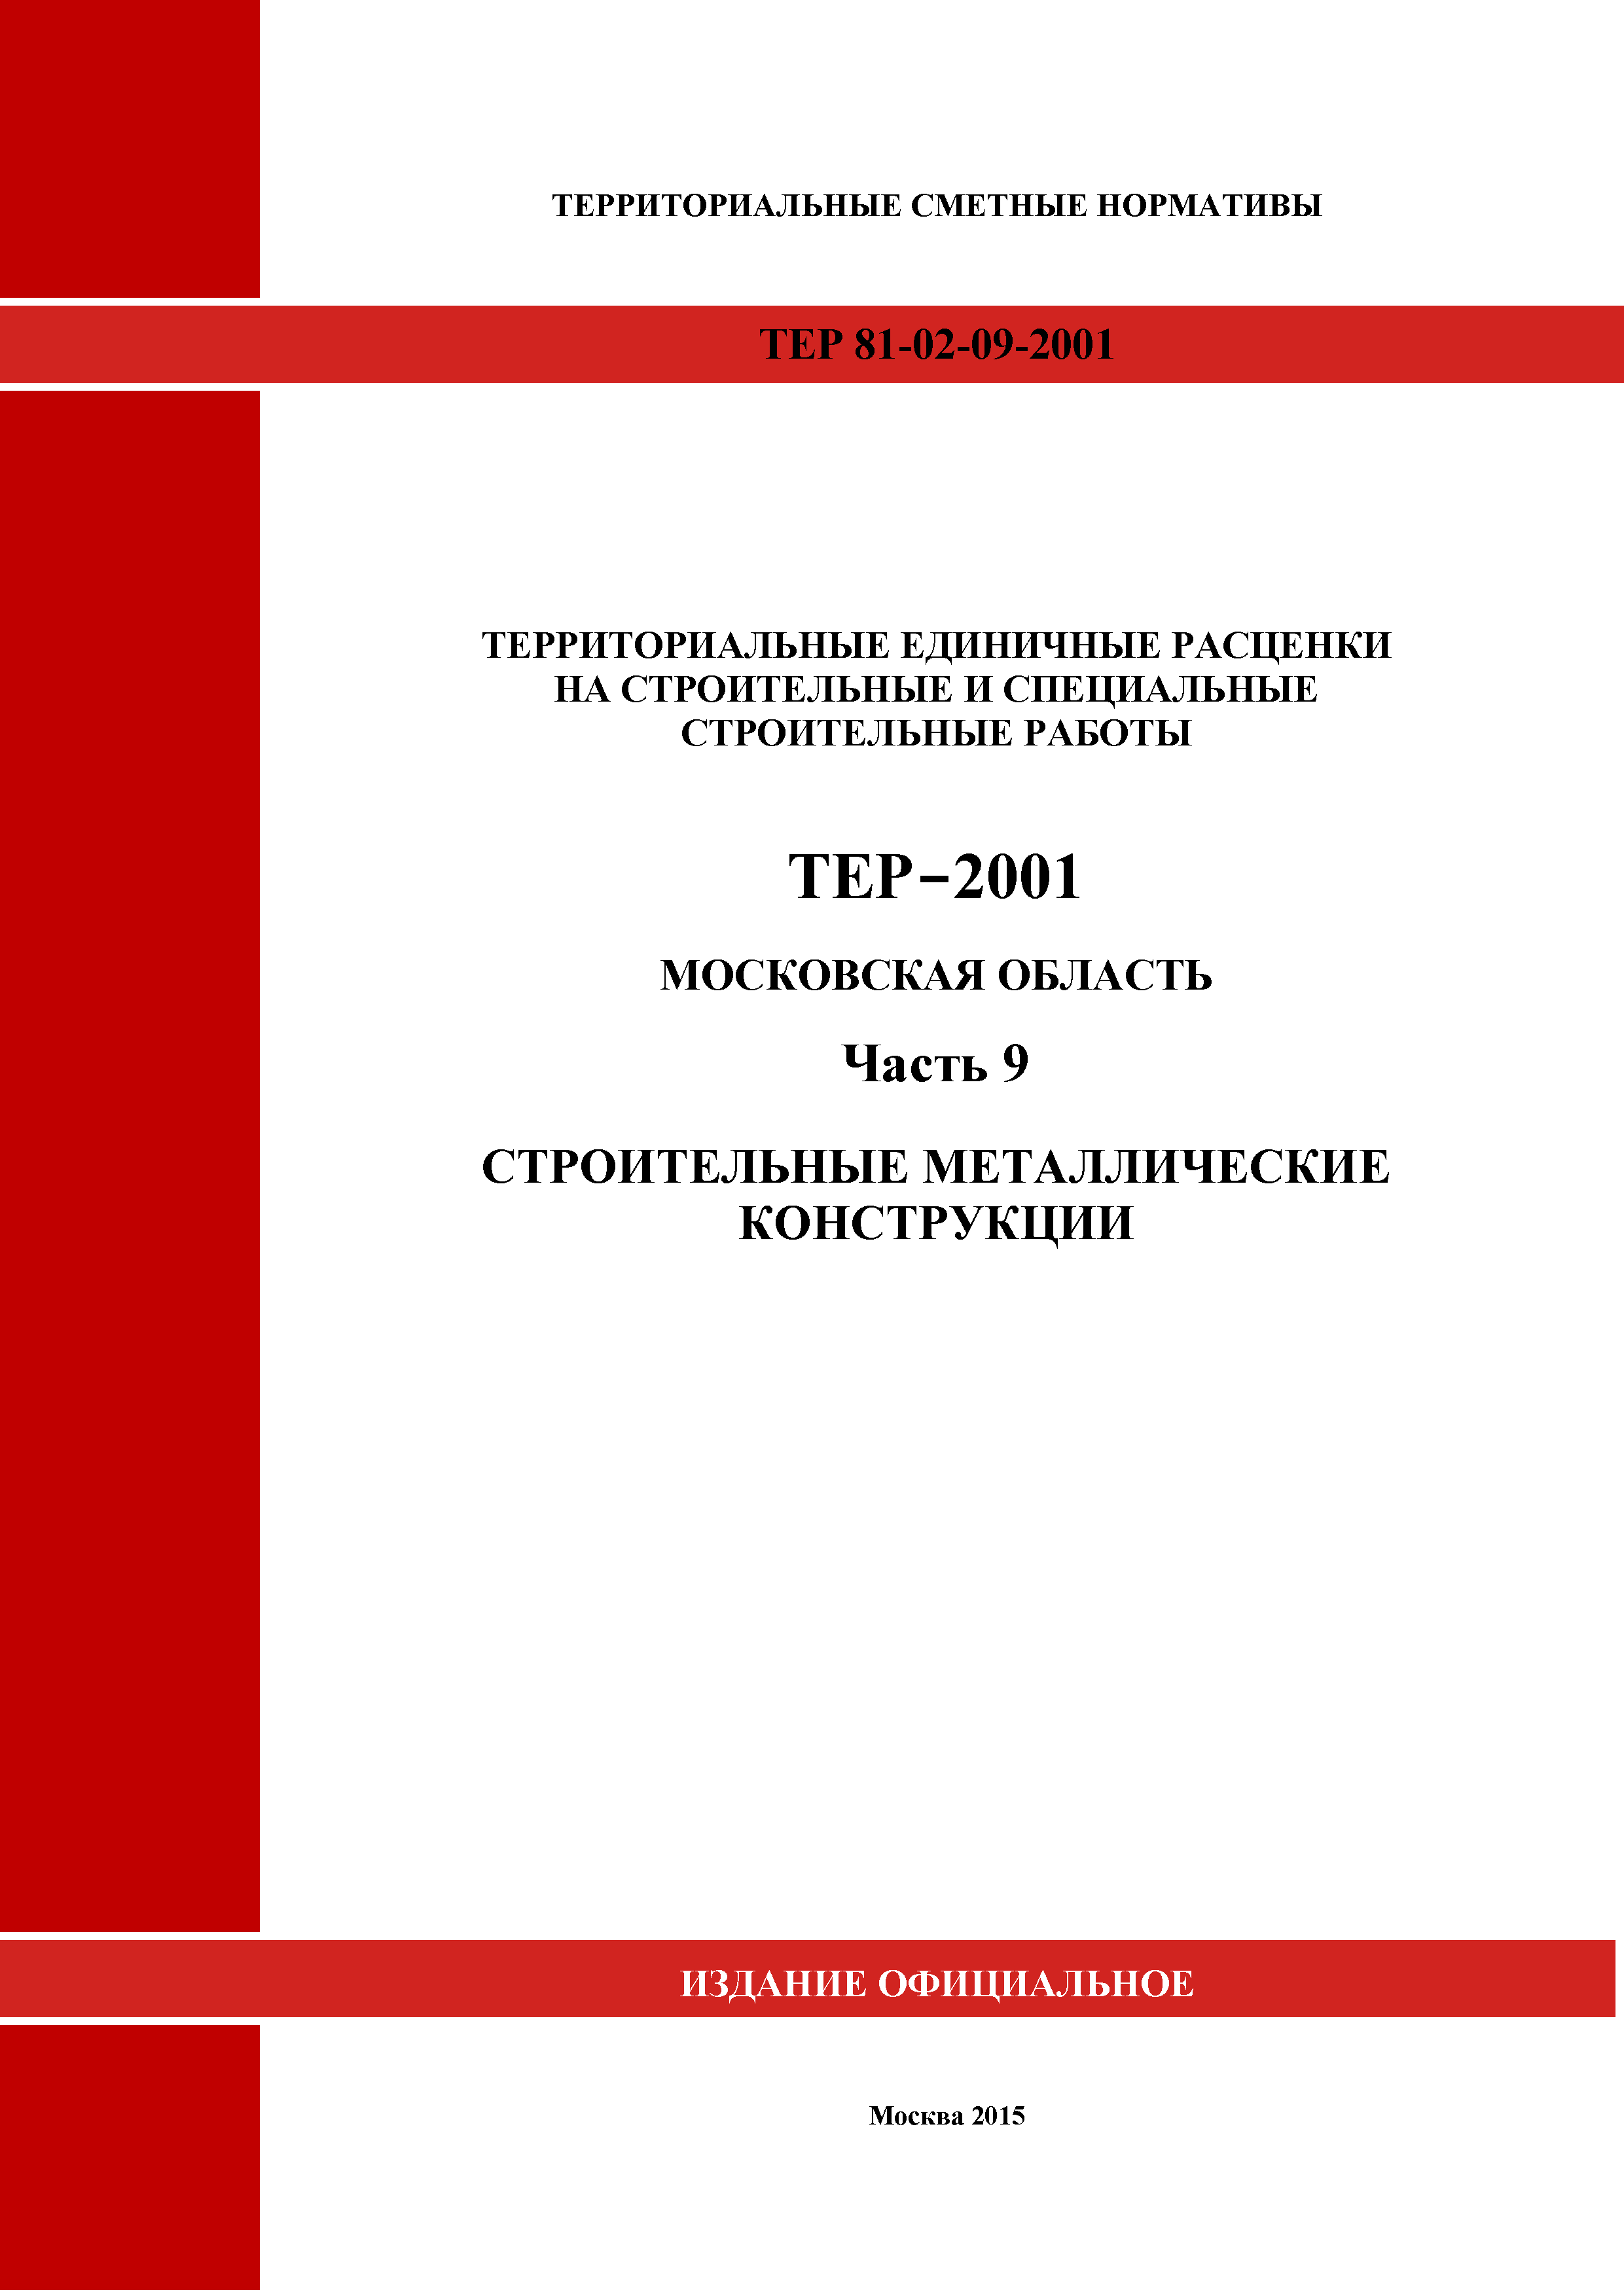 ТЕР 9-2001 Московской области